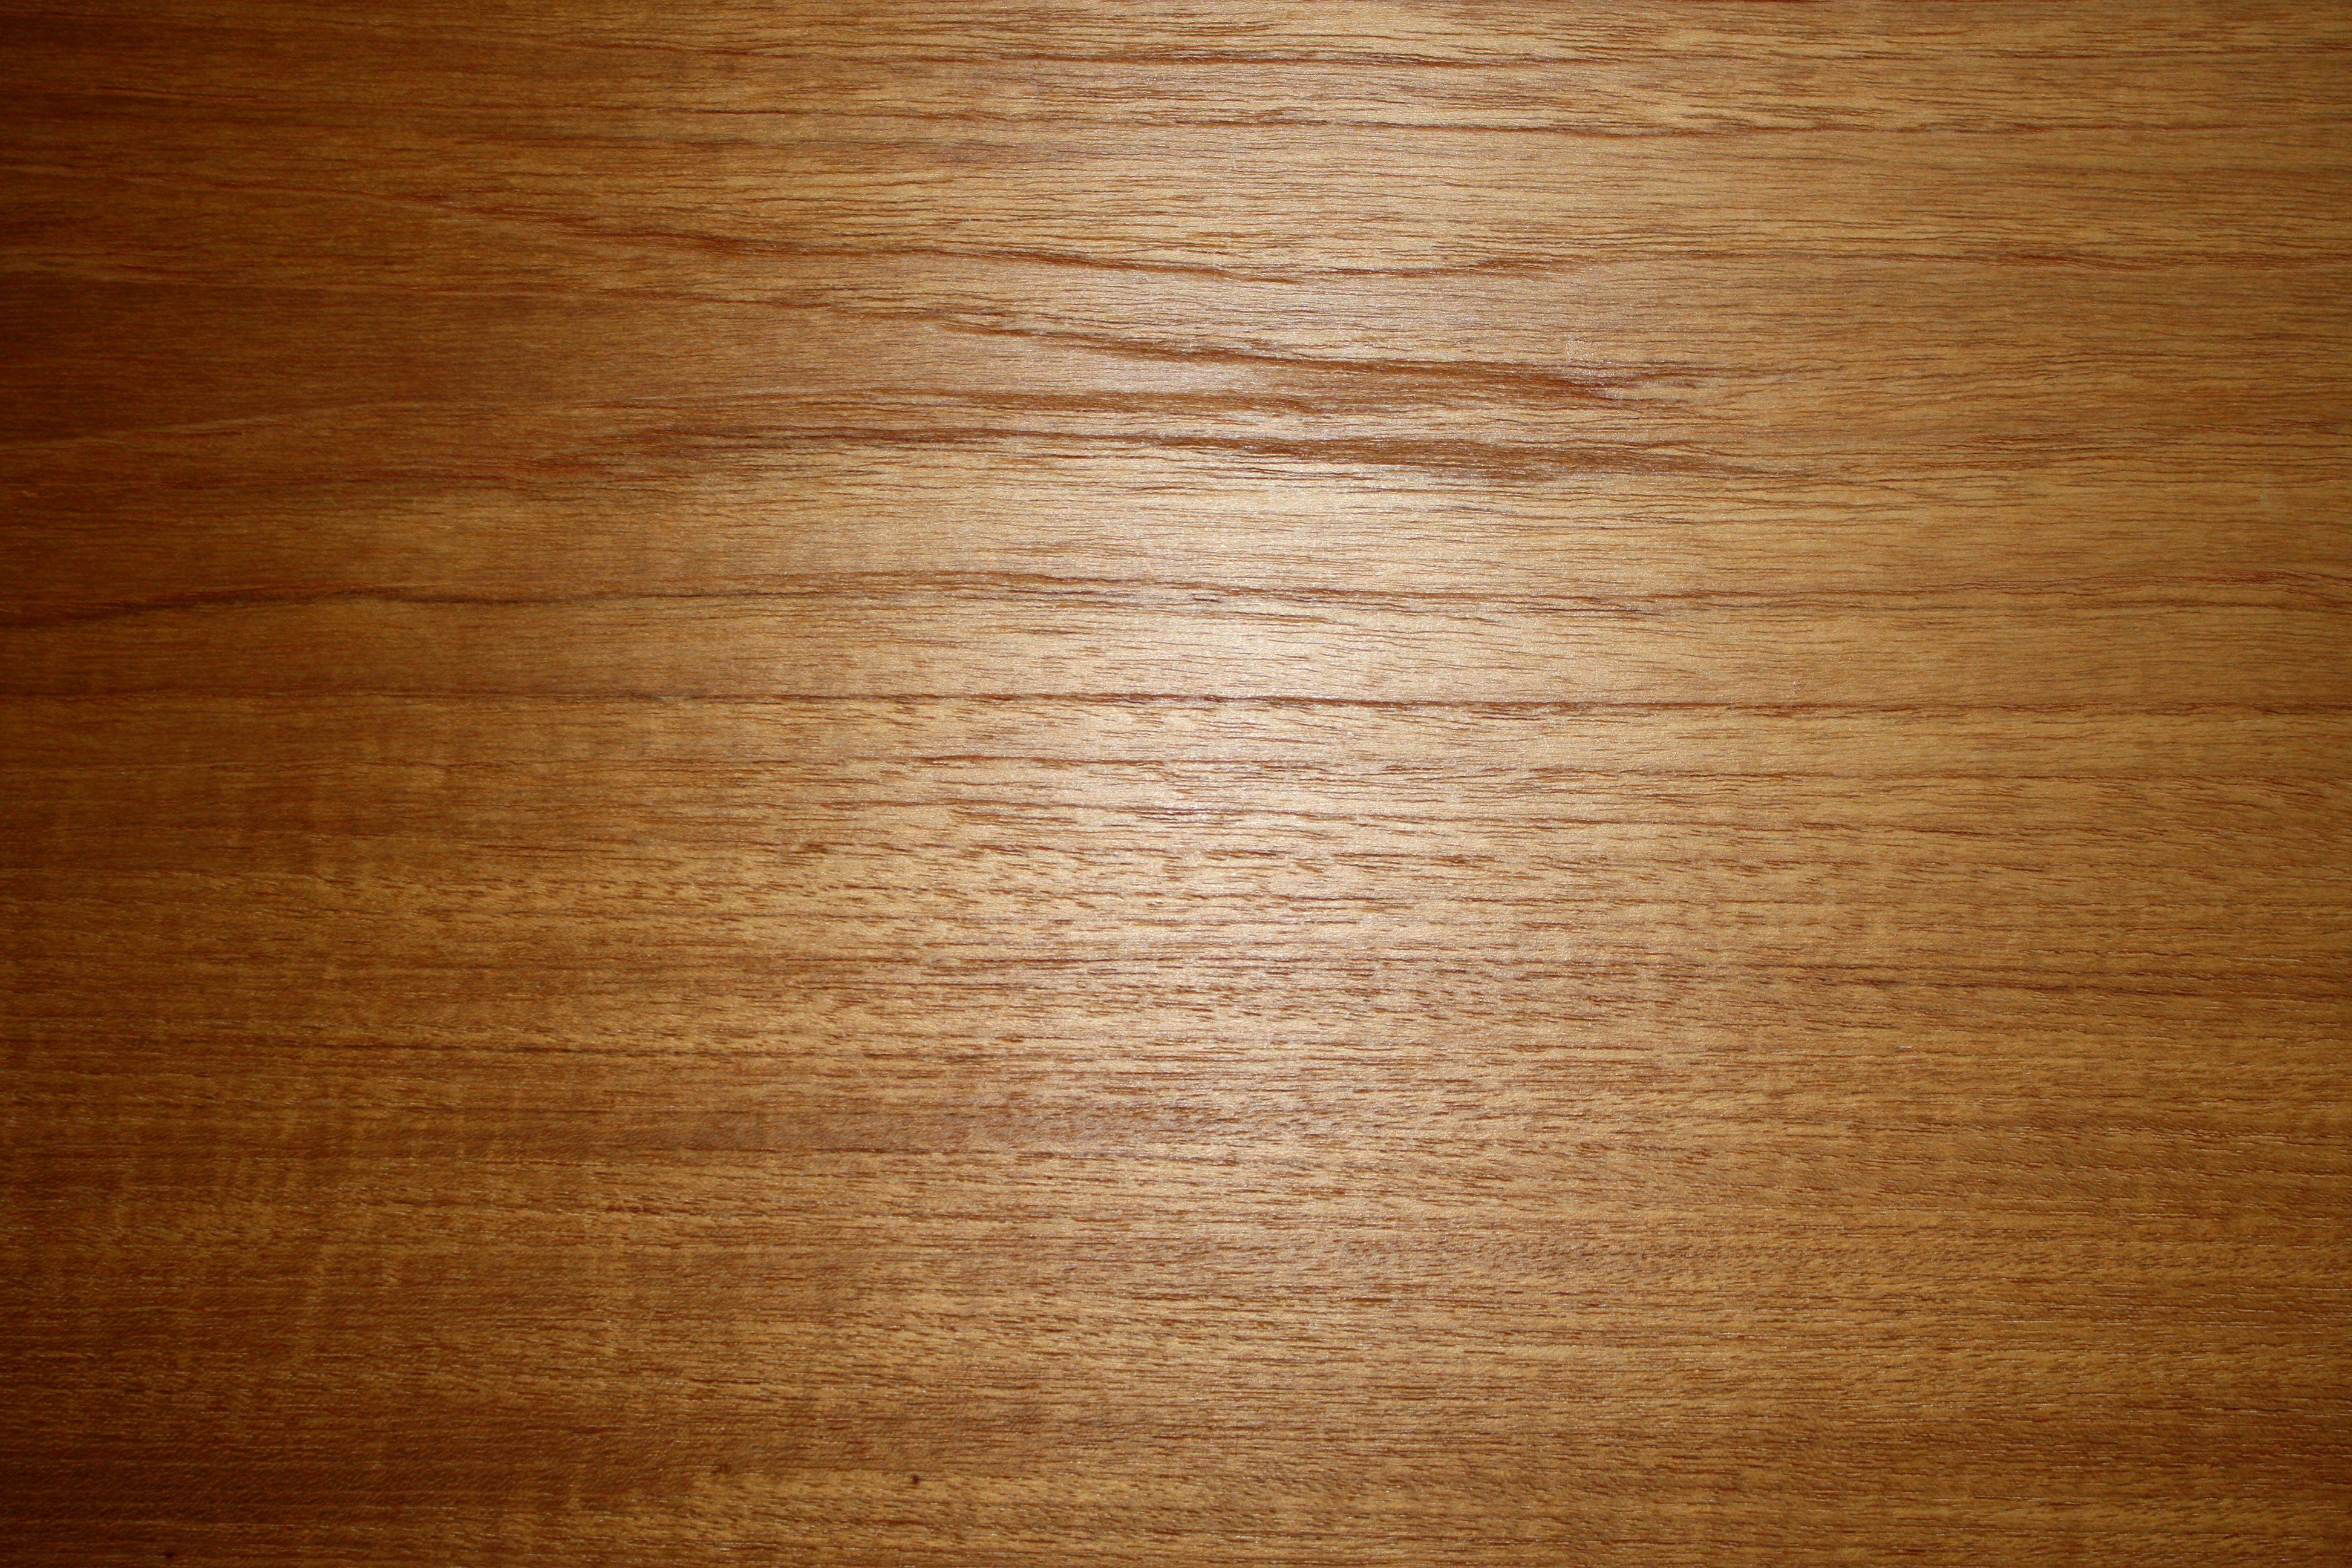 Wood Grain Texture Picture. Free Photograph. Photo Public Domain